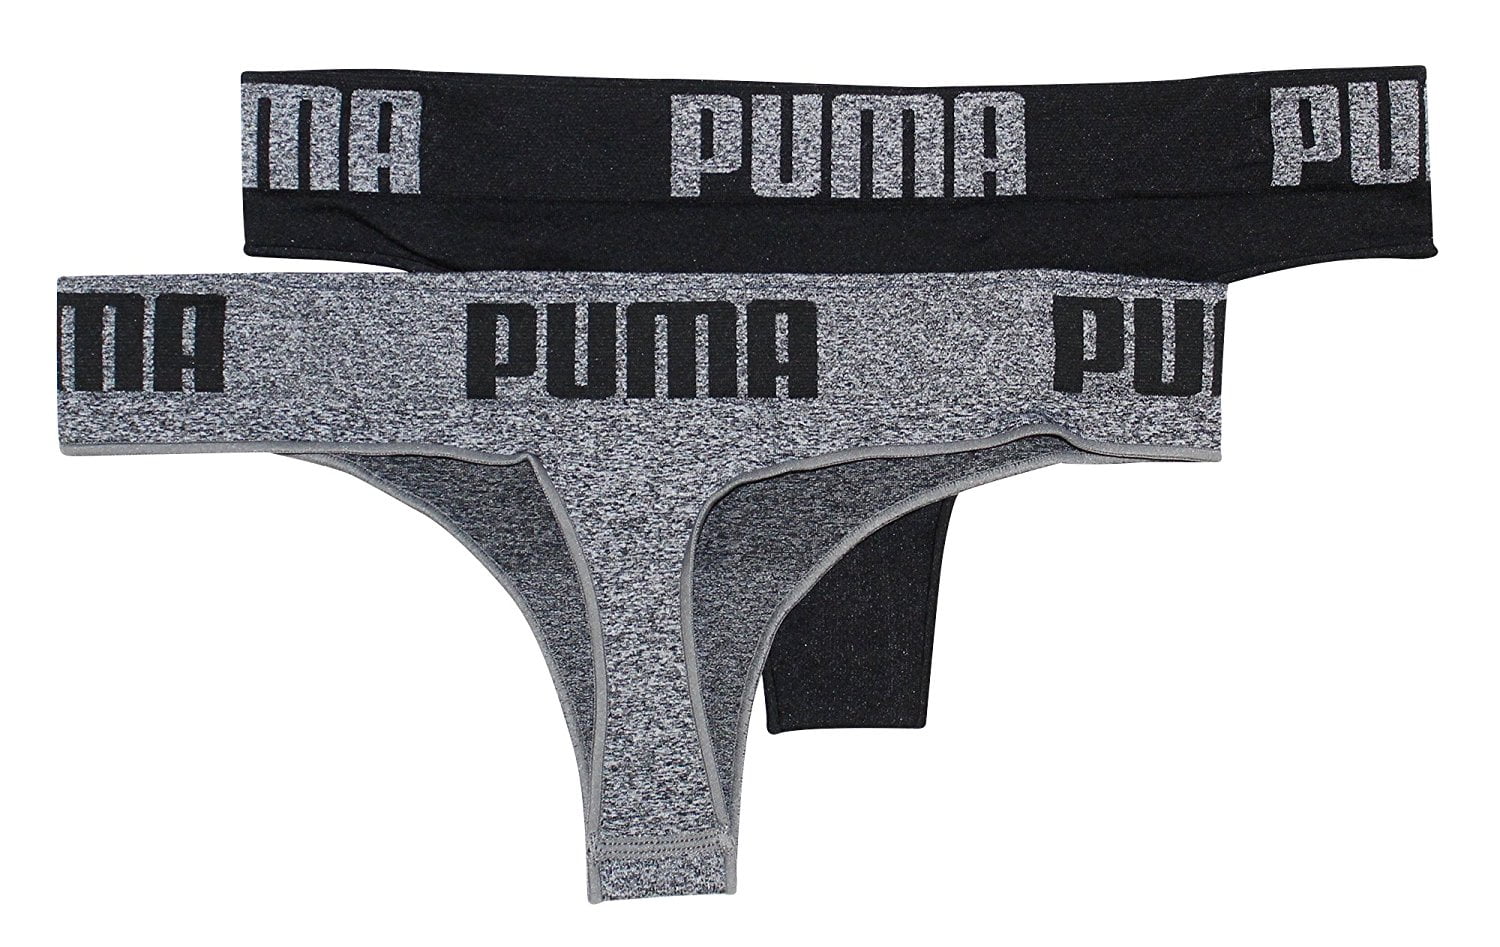 puma women underwear